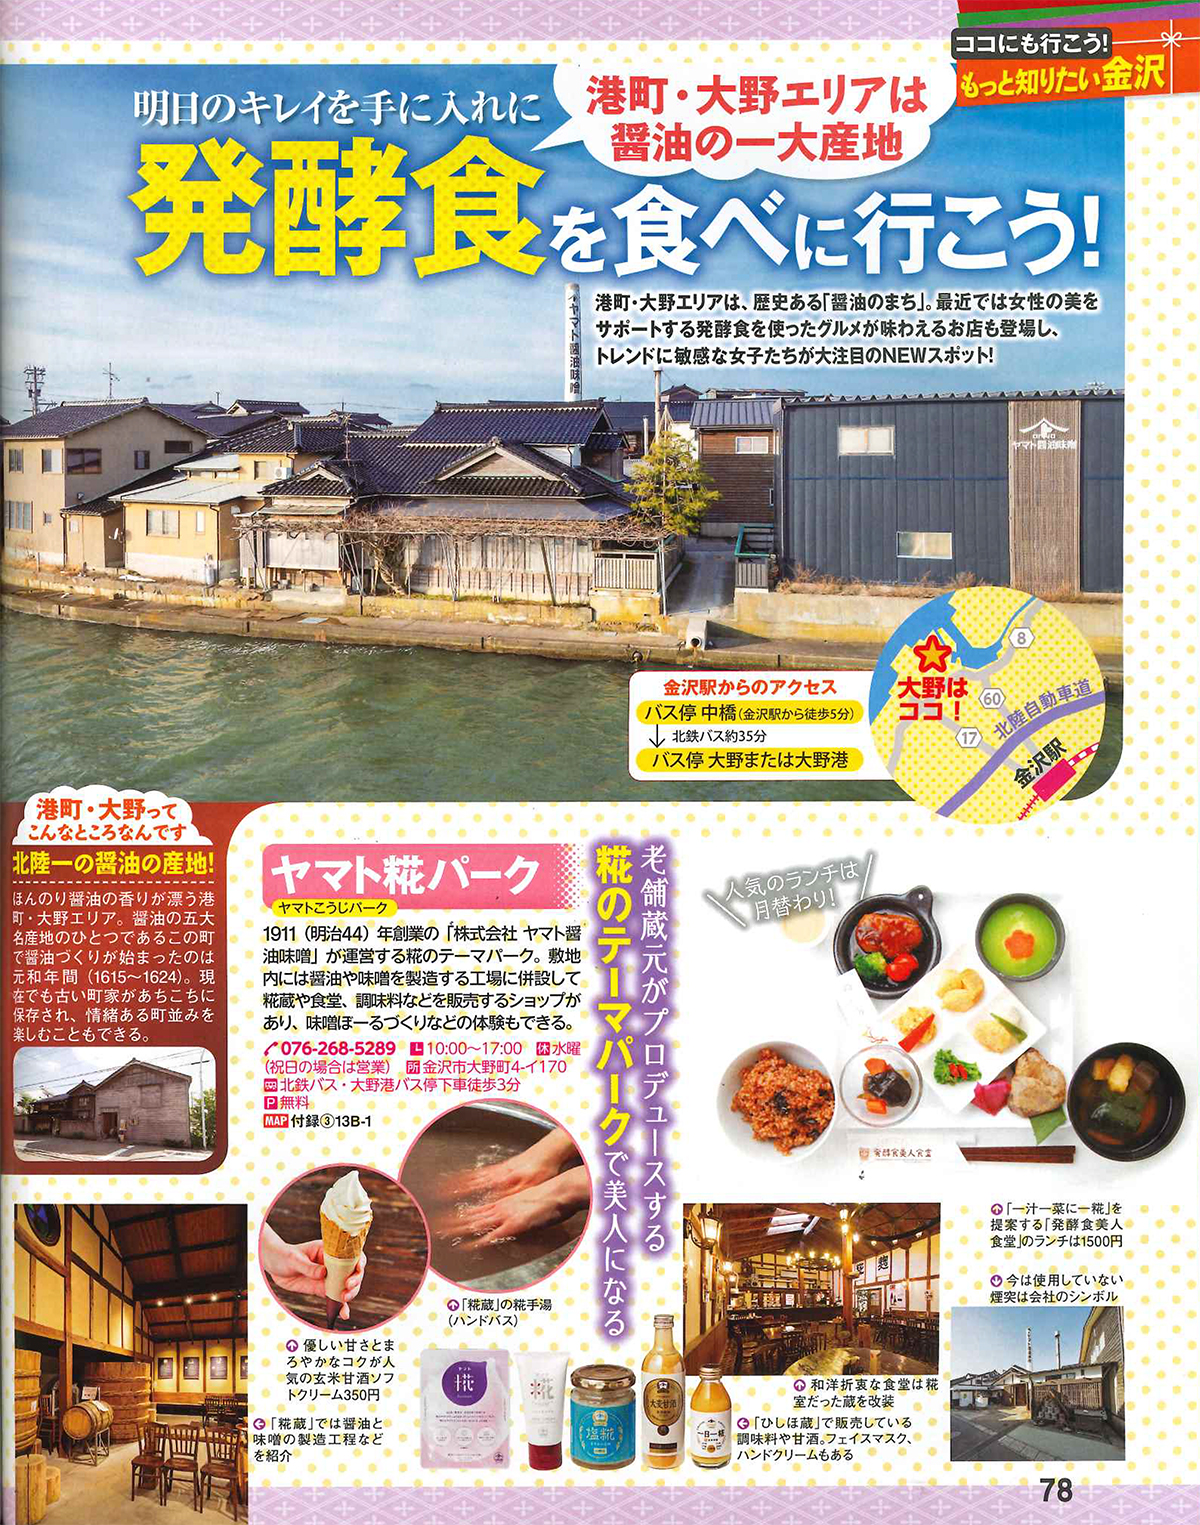 ヤマト糀パーク」が「まっぷる 金沢」に掲載されました。 | 金沢・ヤマト醤油味噌